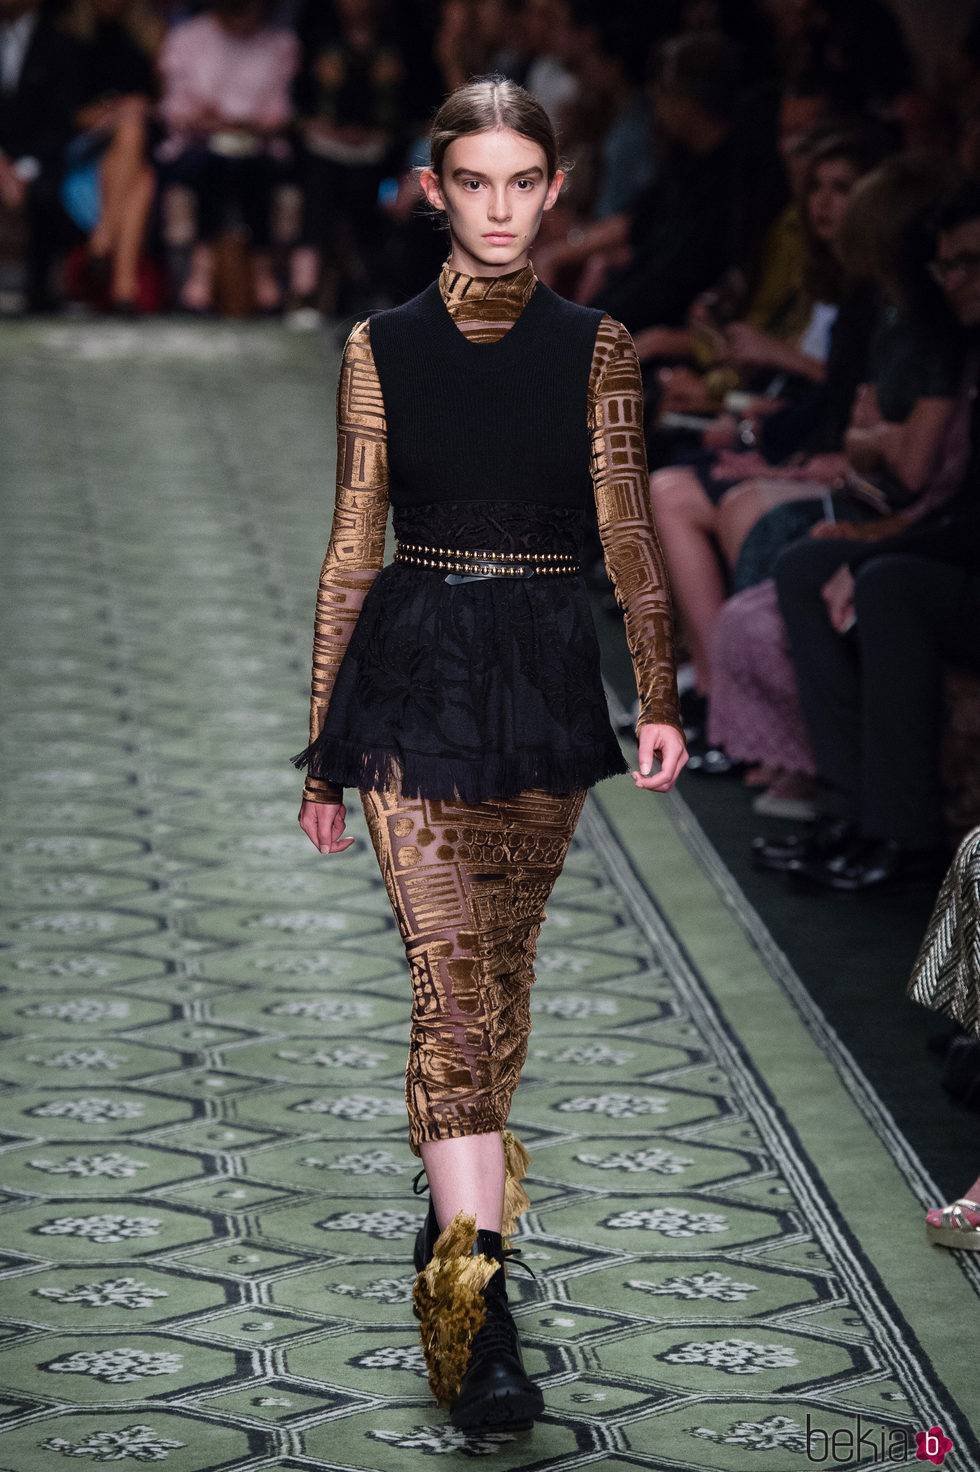 Vestido en negro y extremidades en mosaico de terciopelo durante el desfile de Burberry en la Fashion Week de Londres